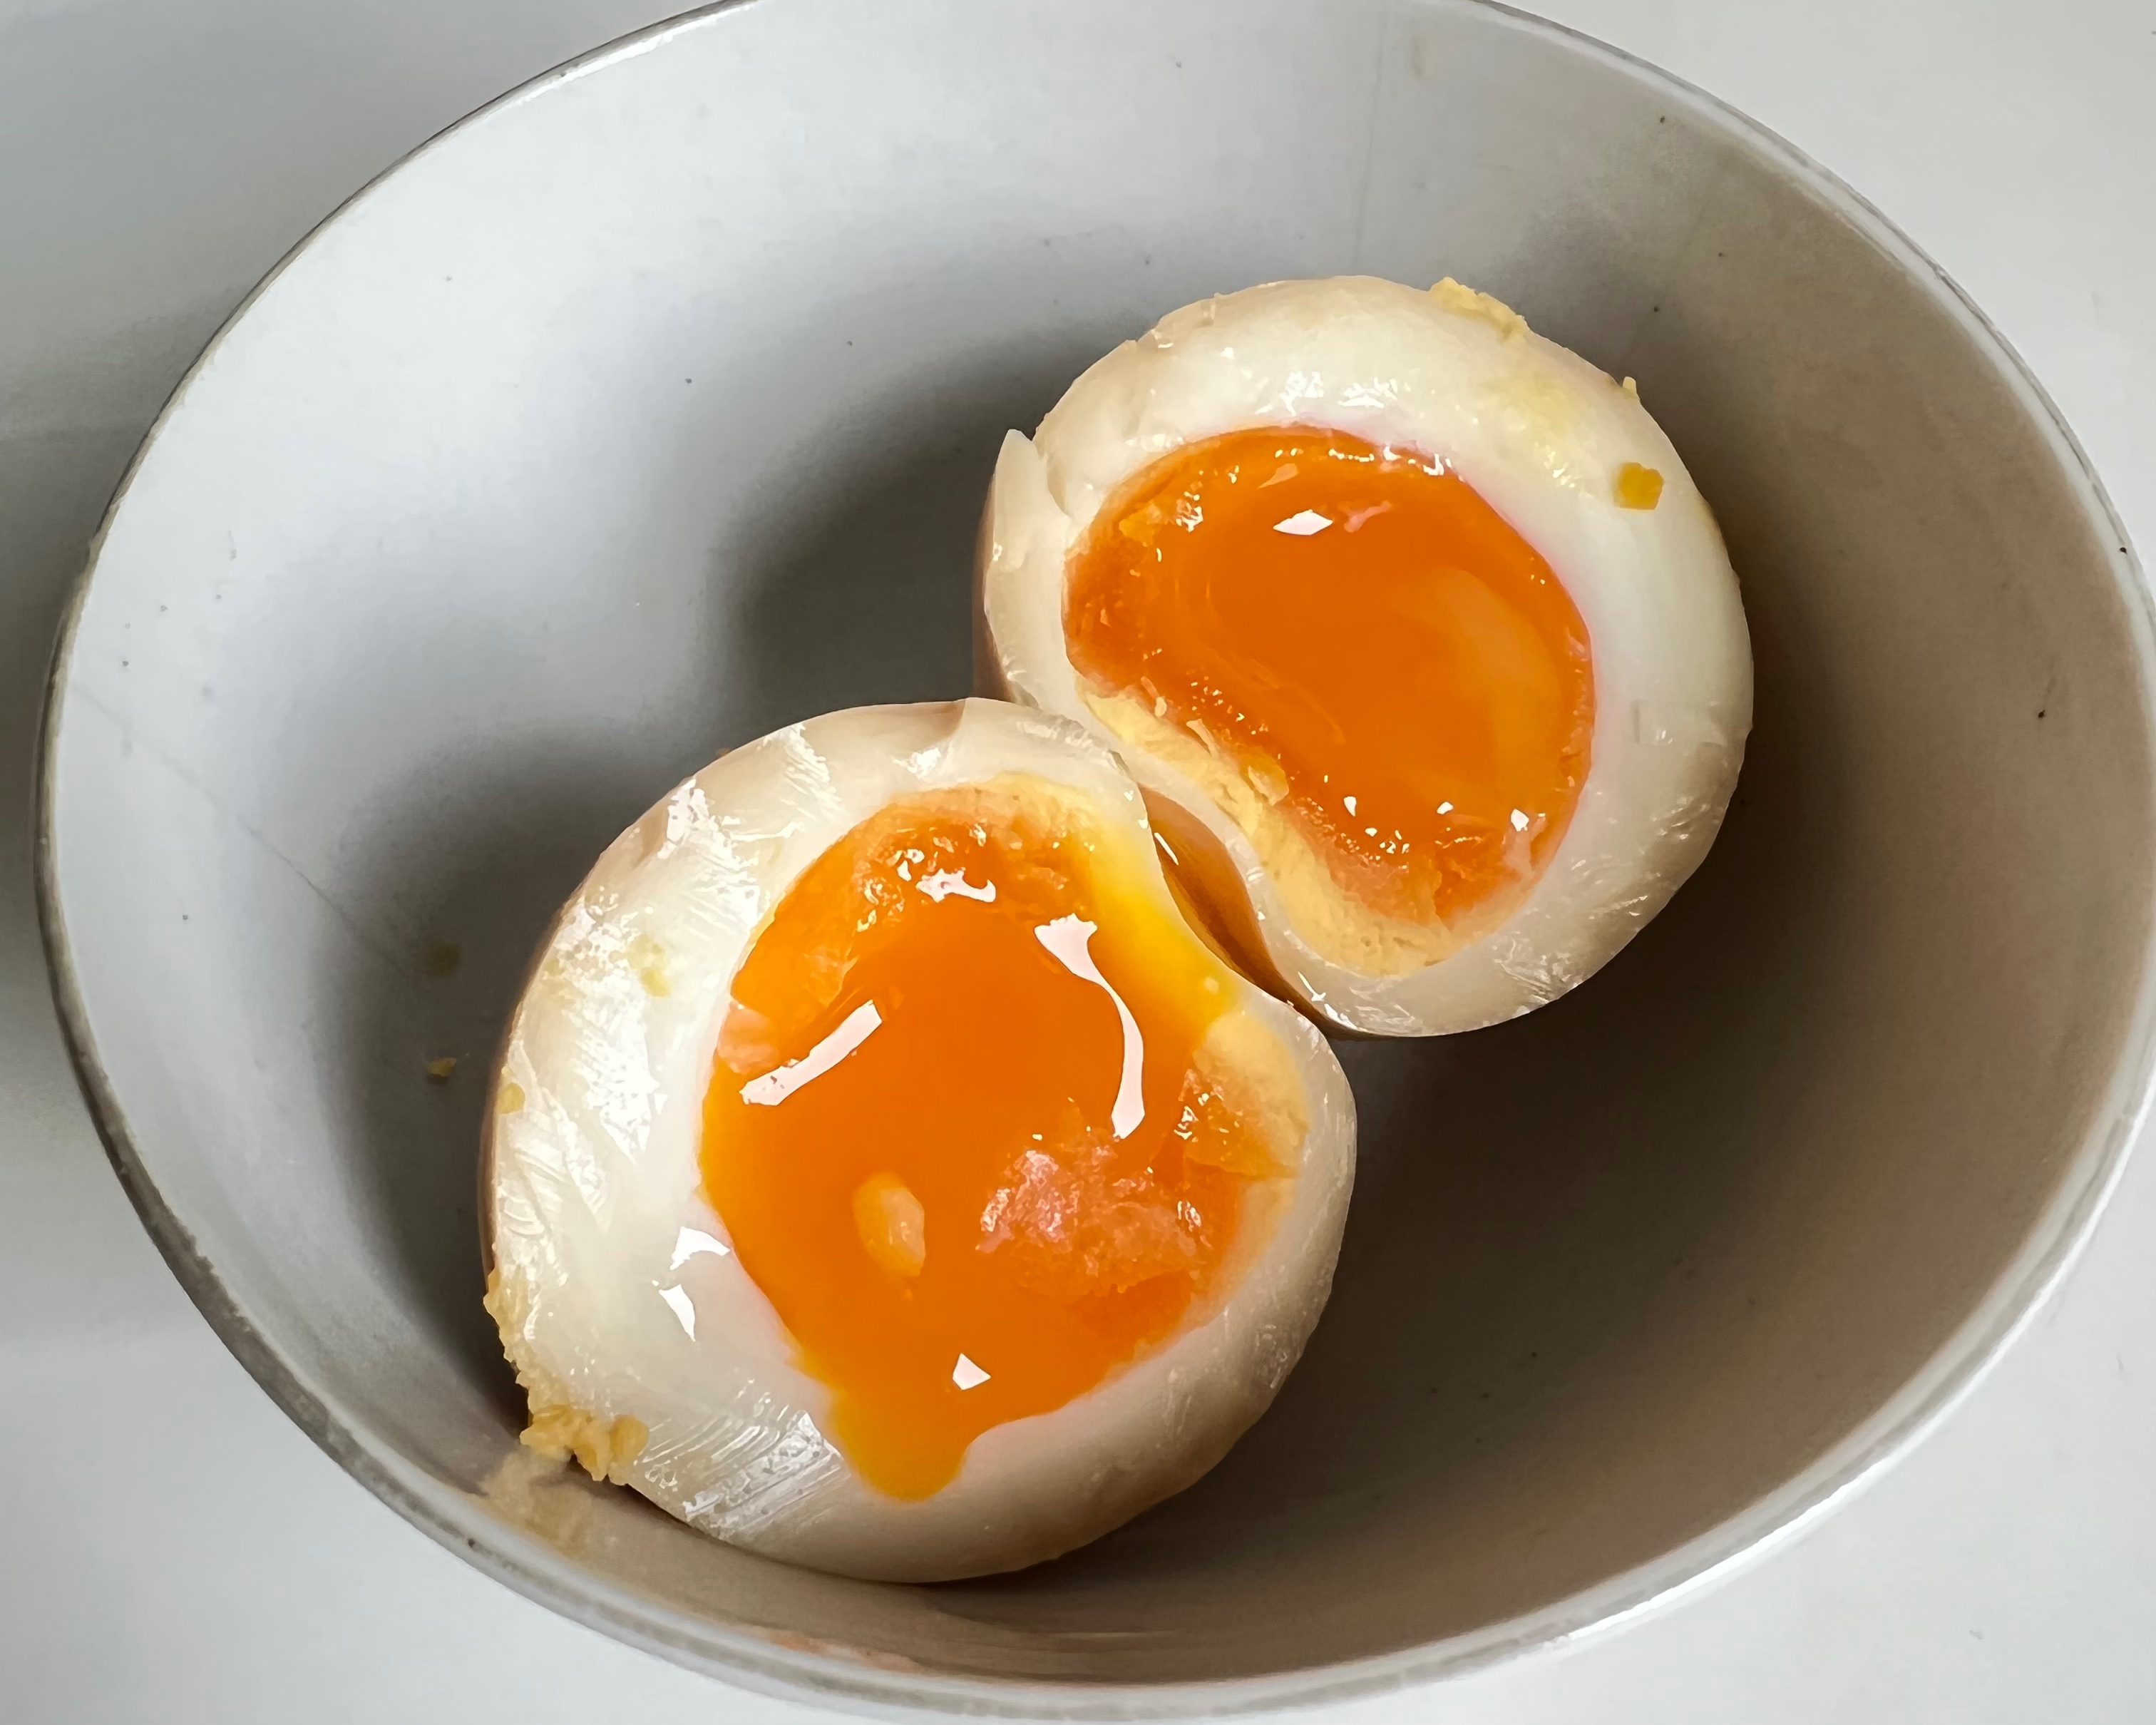 简易不减味-深受小朋友喜爱的日式溏心蛋